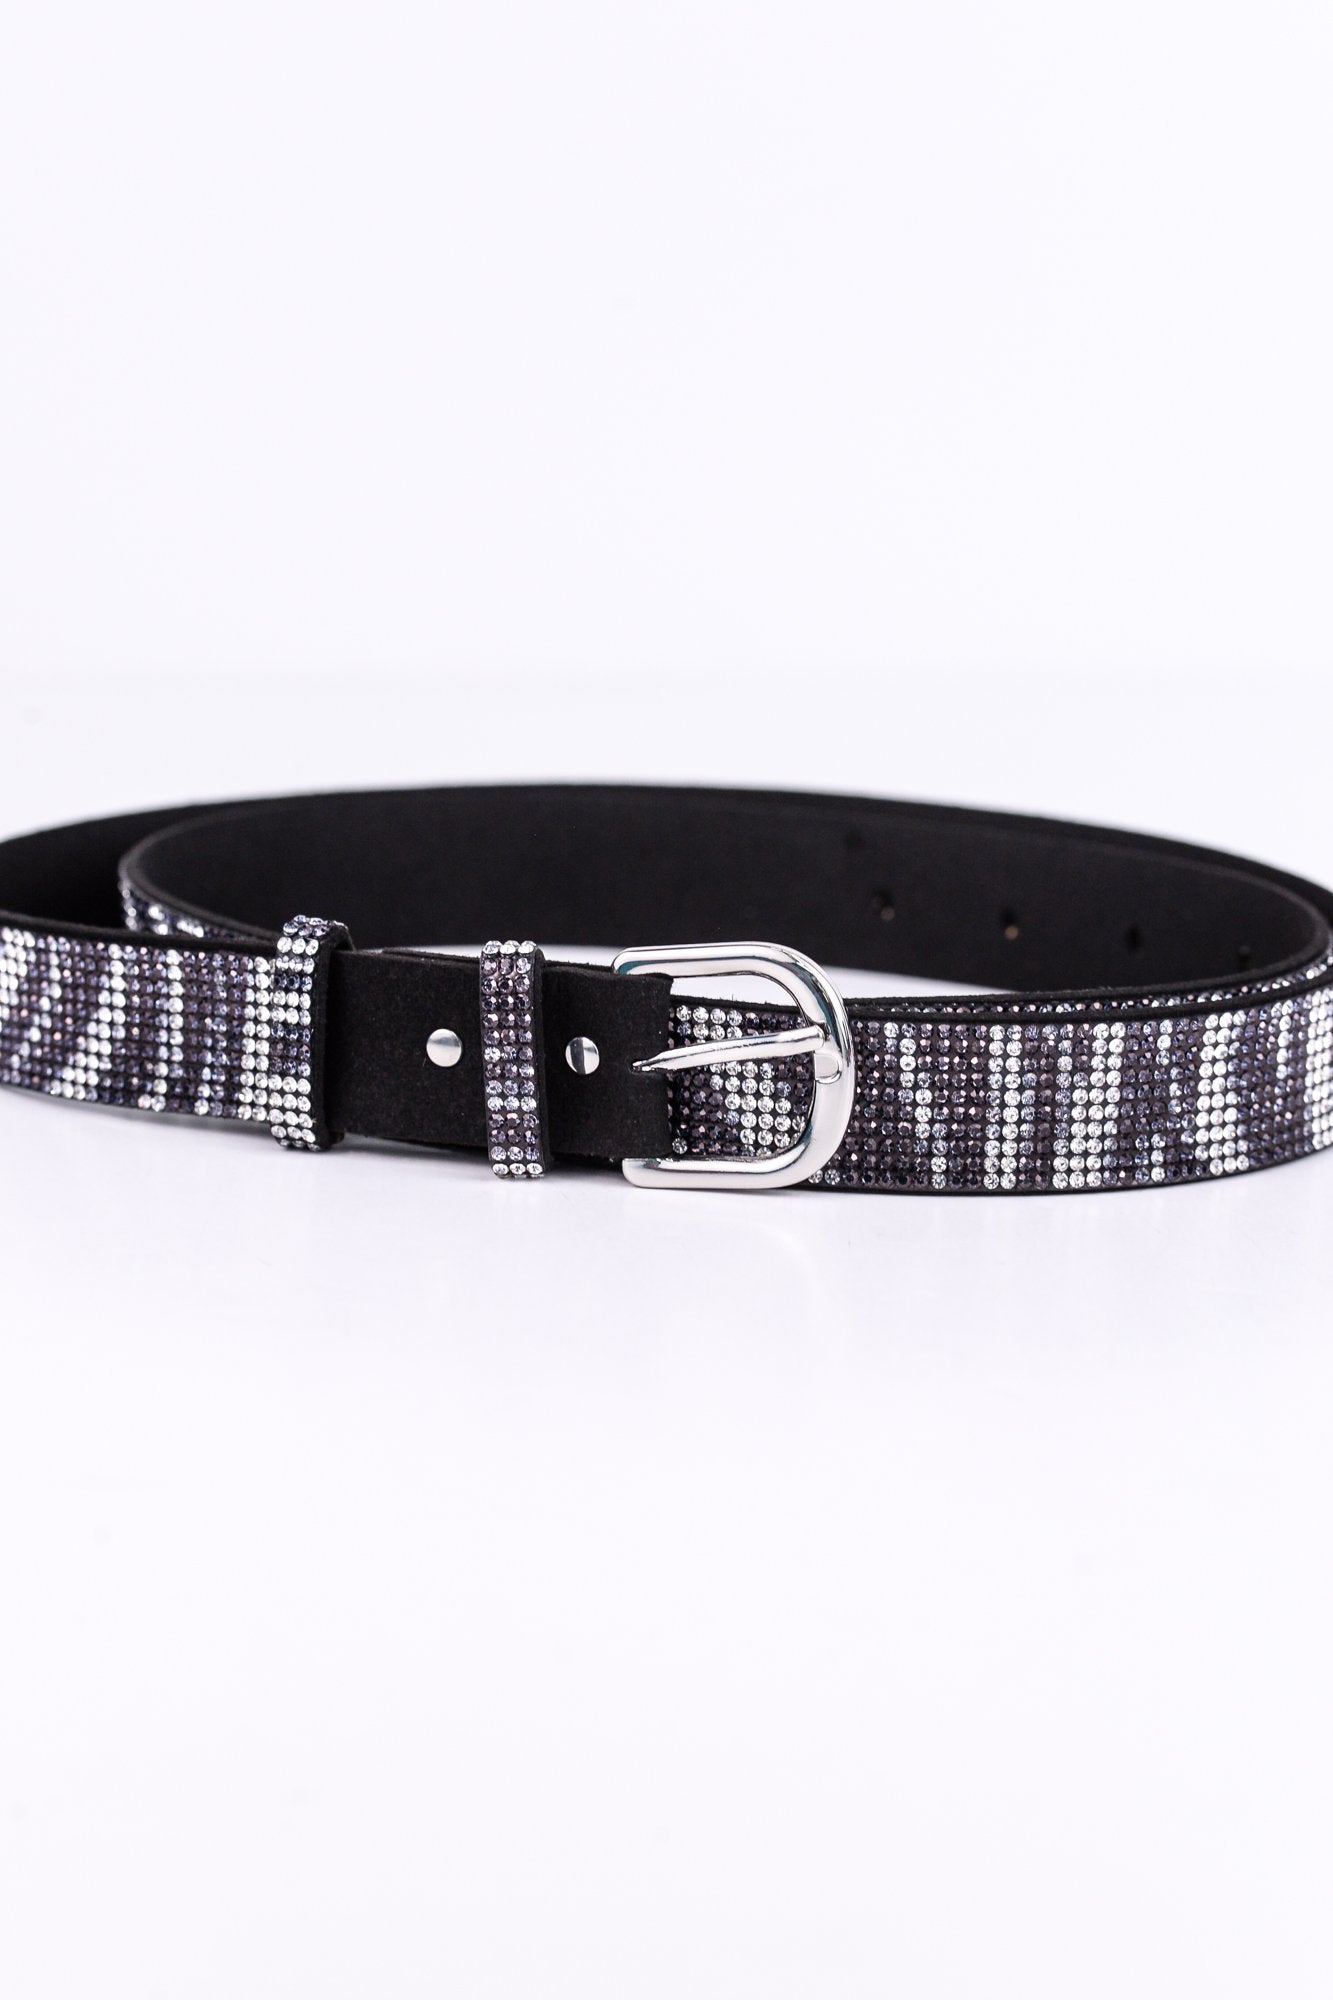 Black/Zebra Bling Belt - BLT1041BK